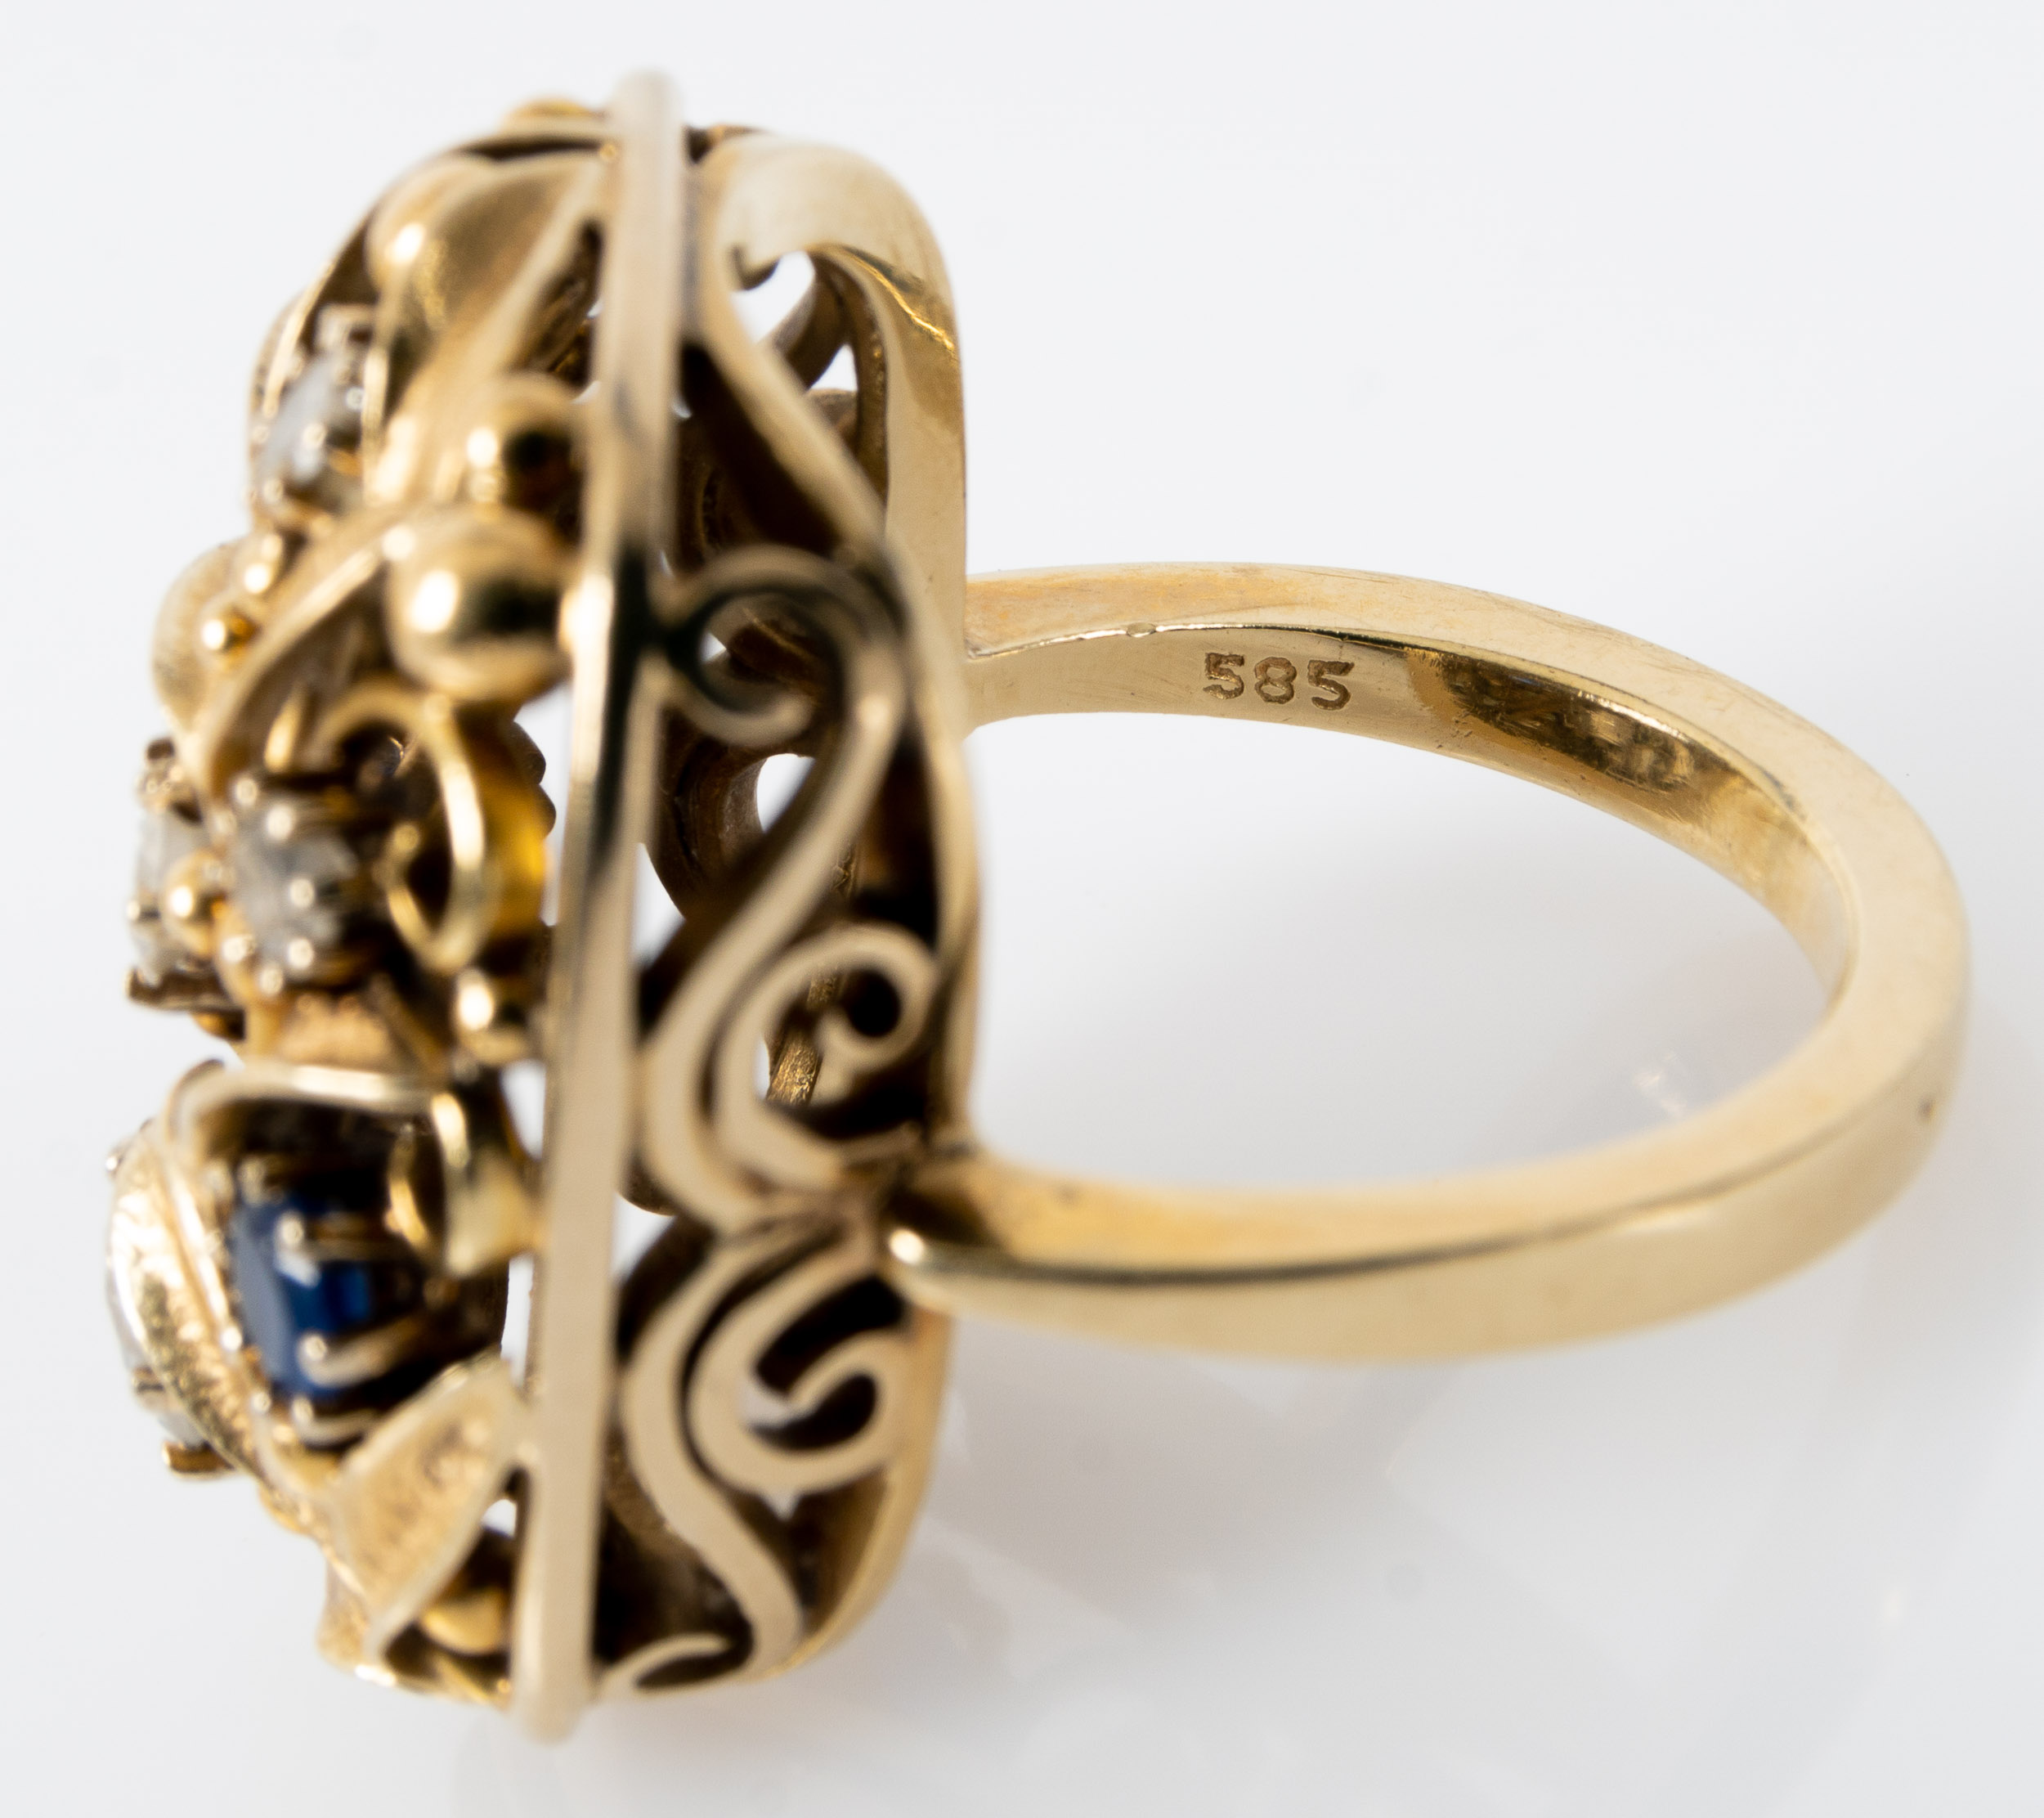 Prachtvoller Damenring in 585er Gelbgold, sogen. "Blütennest" - Ring, rechteckig, mit üppigem, flor - Image 7 of 7